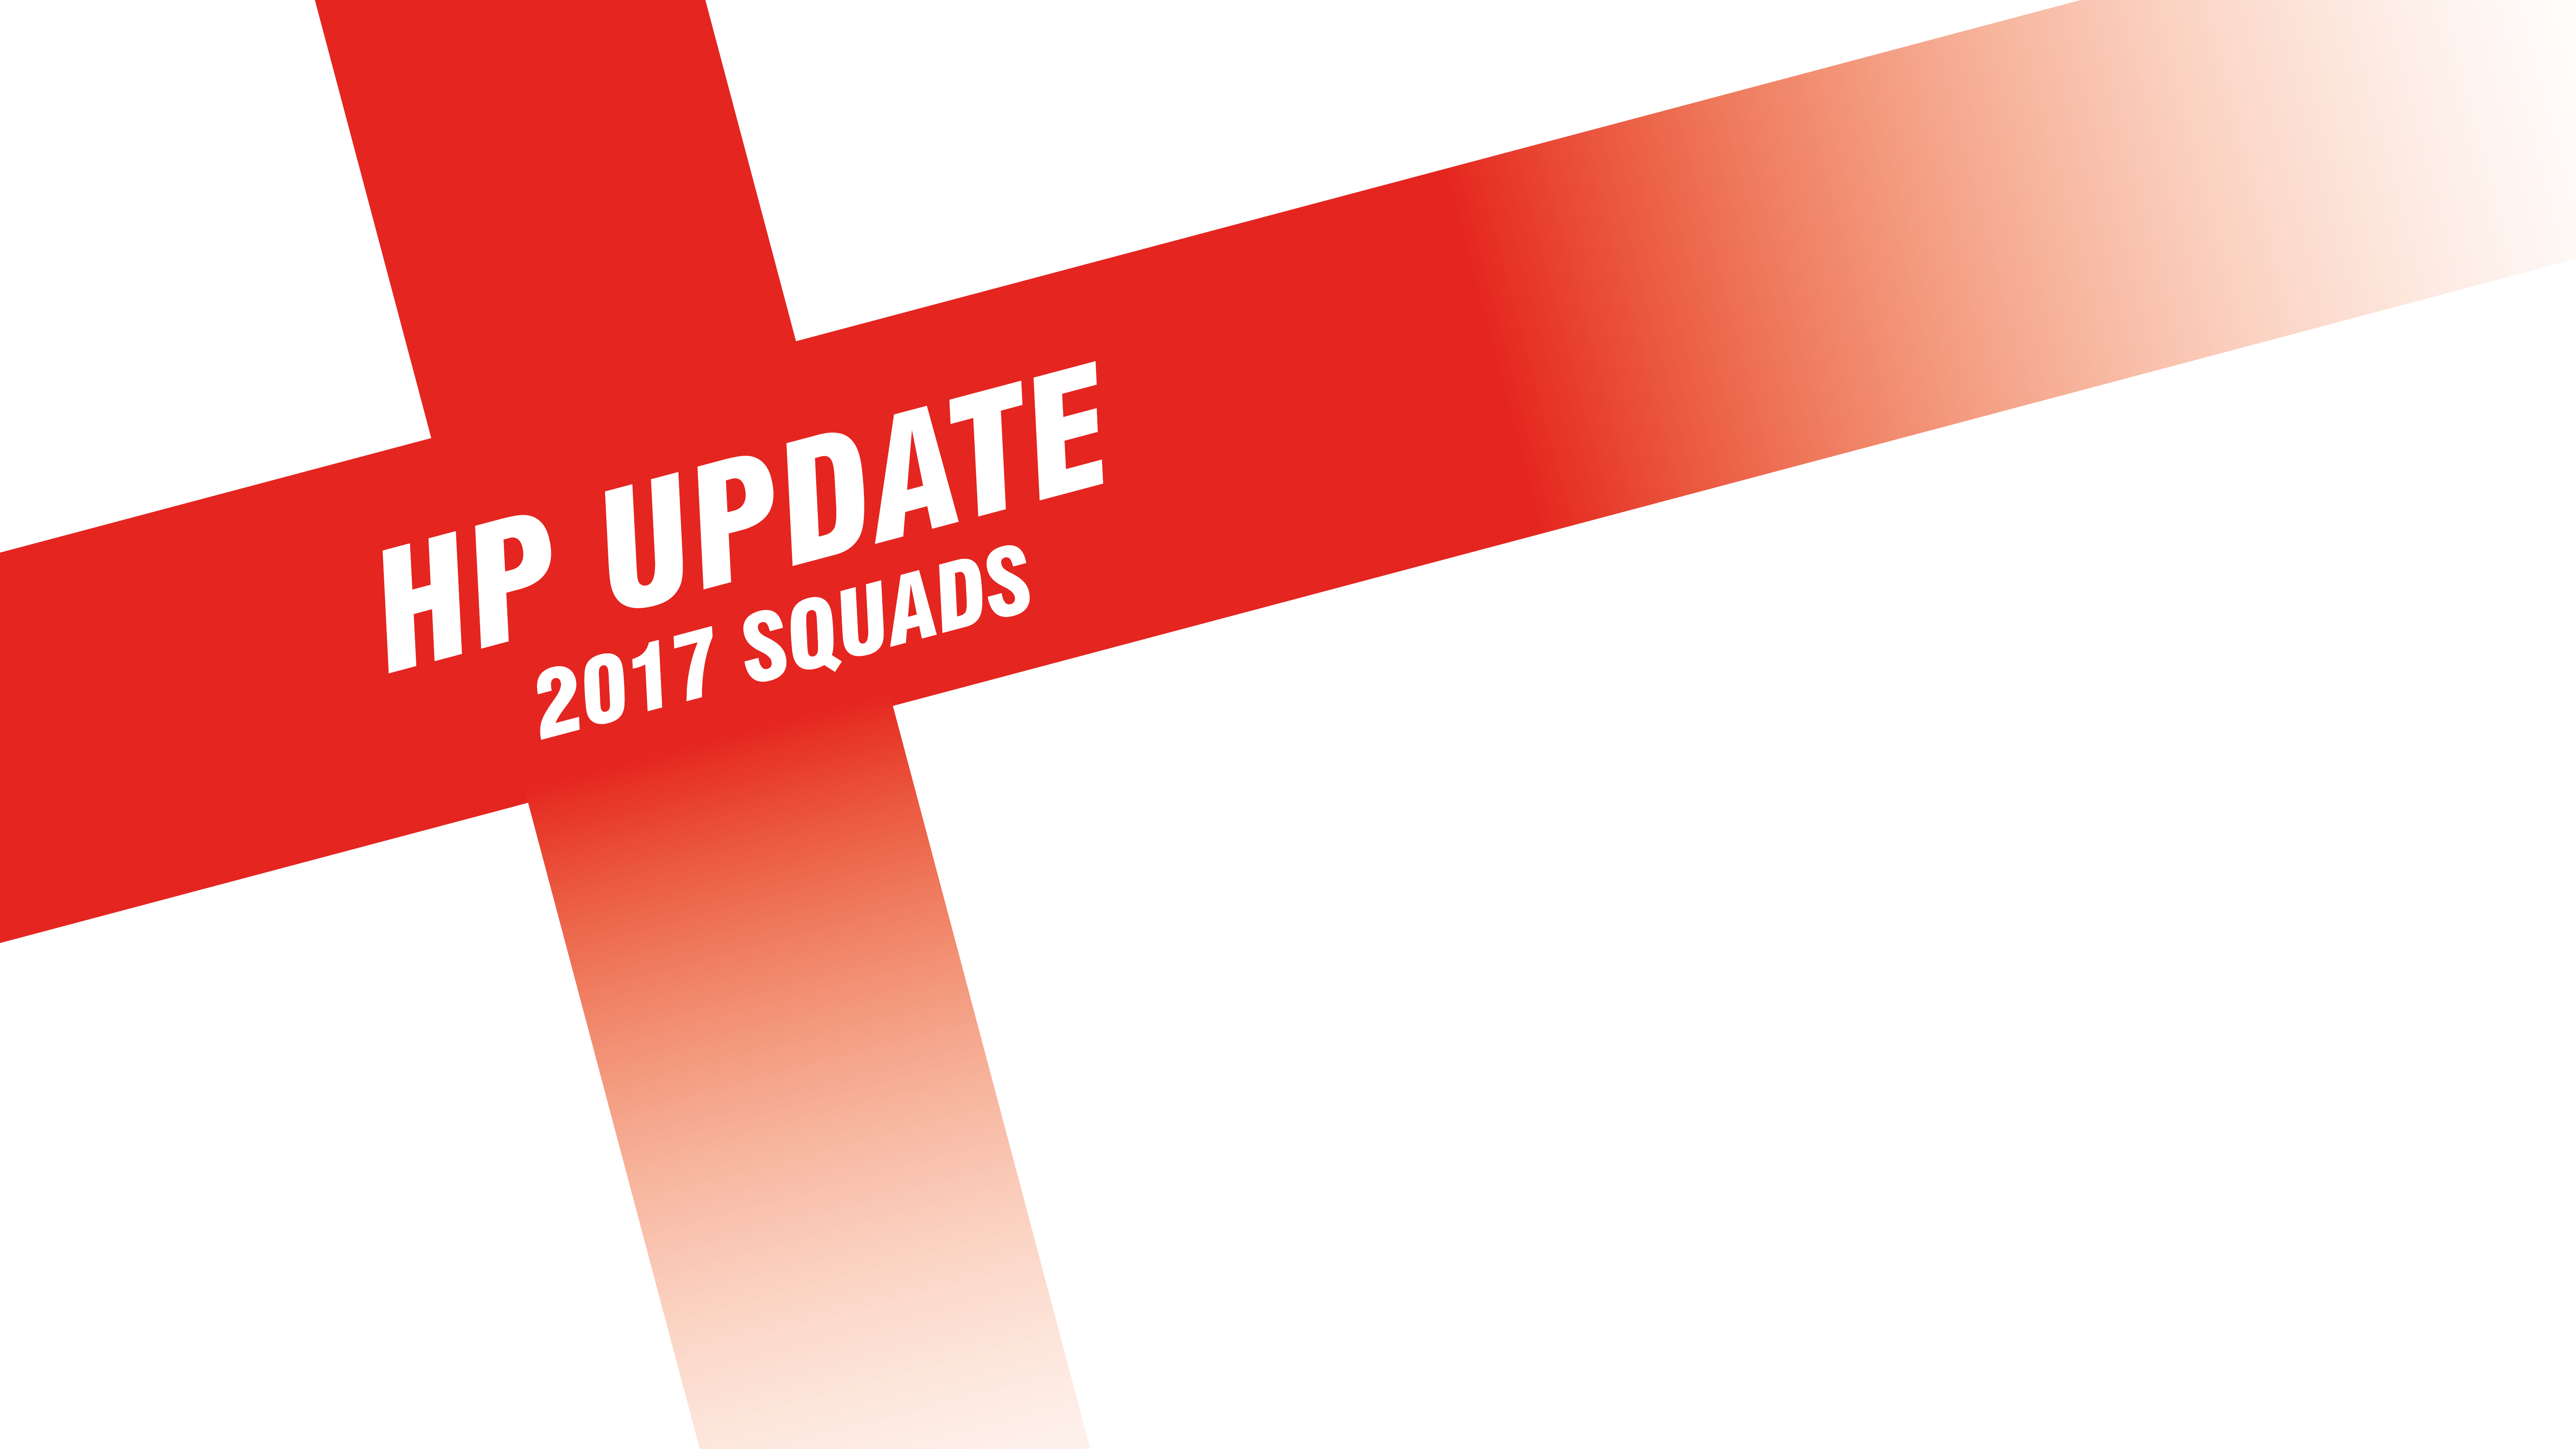 HP Update | 2017 Squads